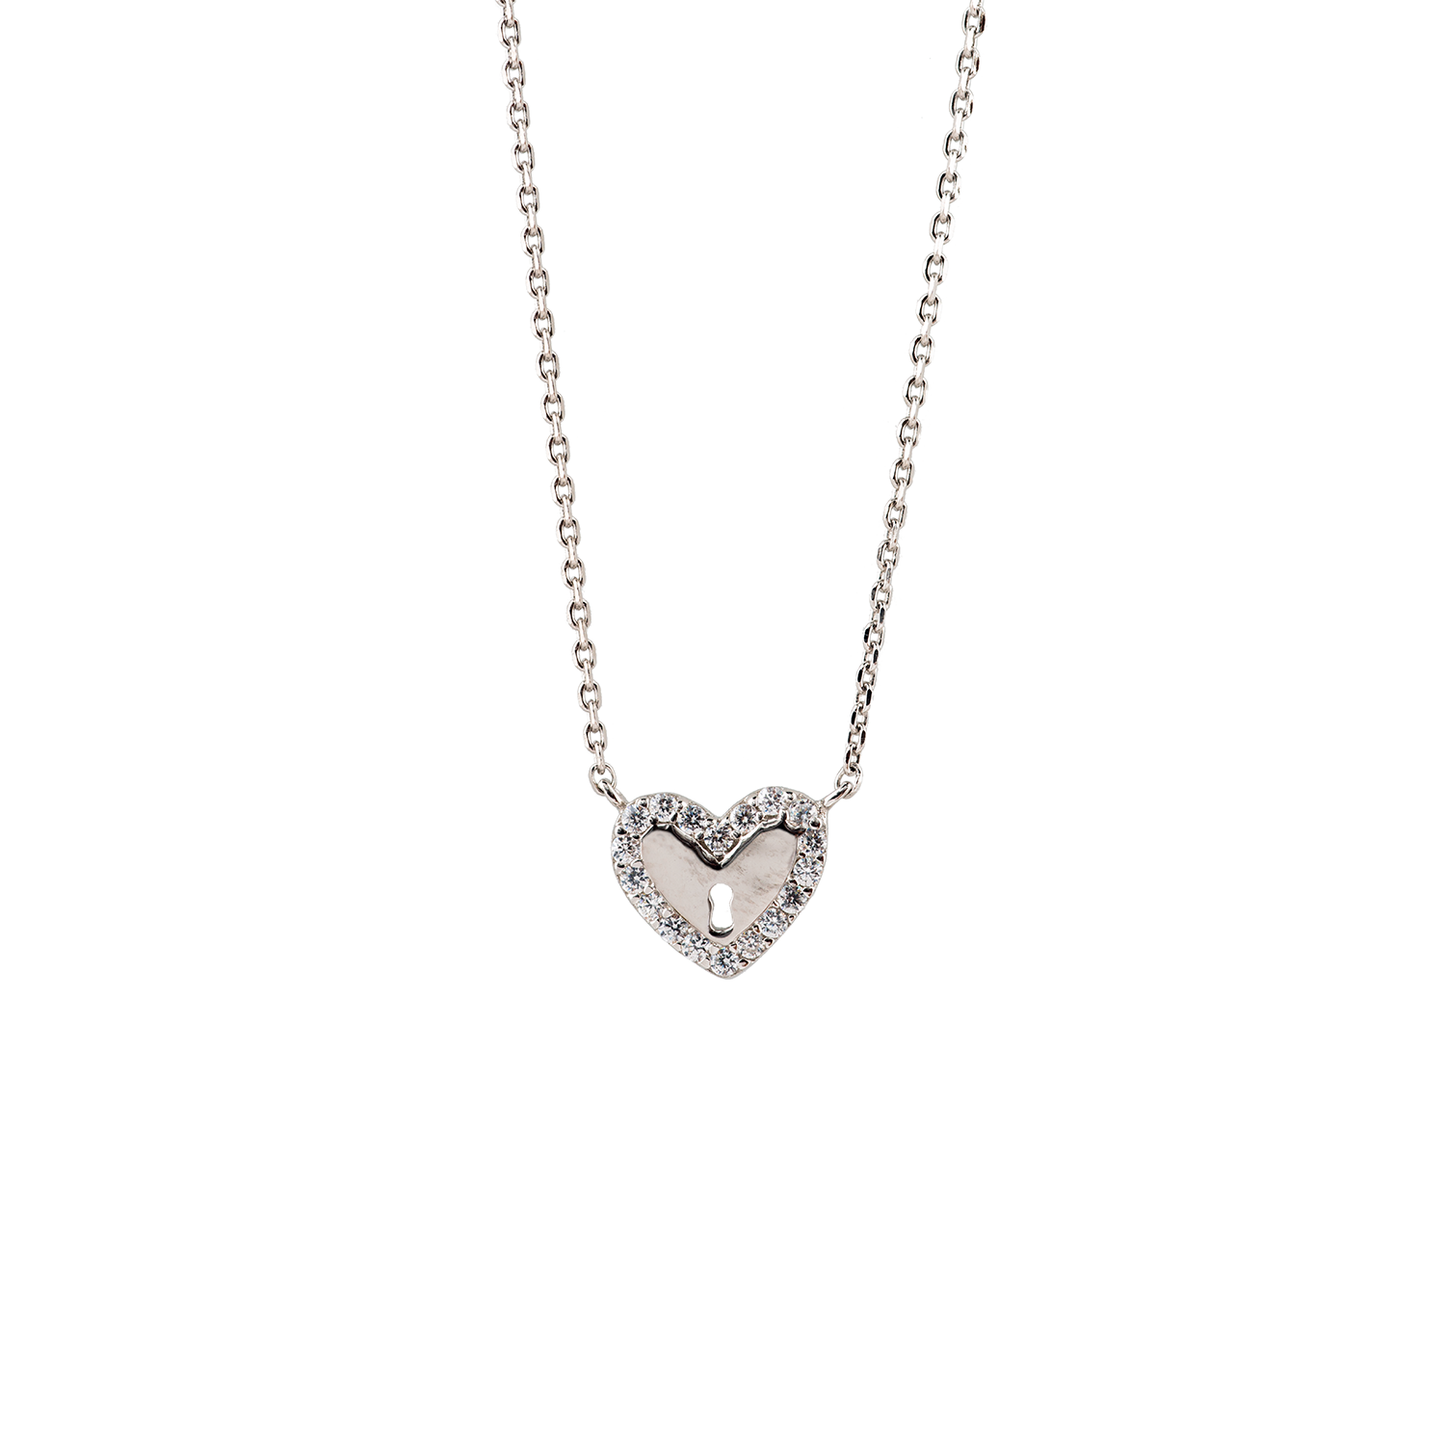 Feine Sterling Silber Halskette mit einem silbernen Herz Anhänger mit weißen Zirkonias